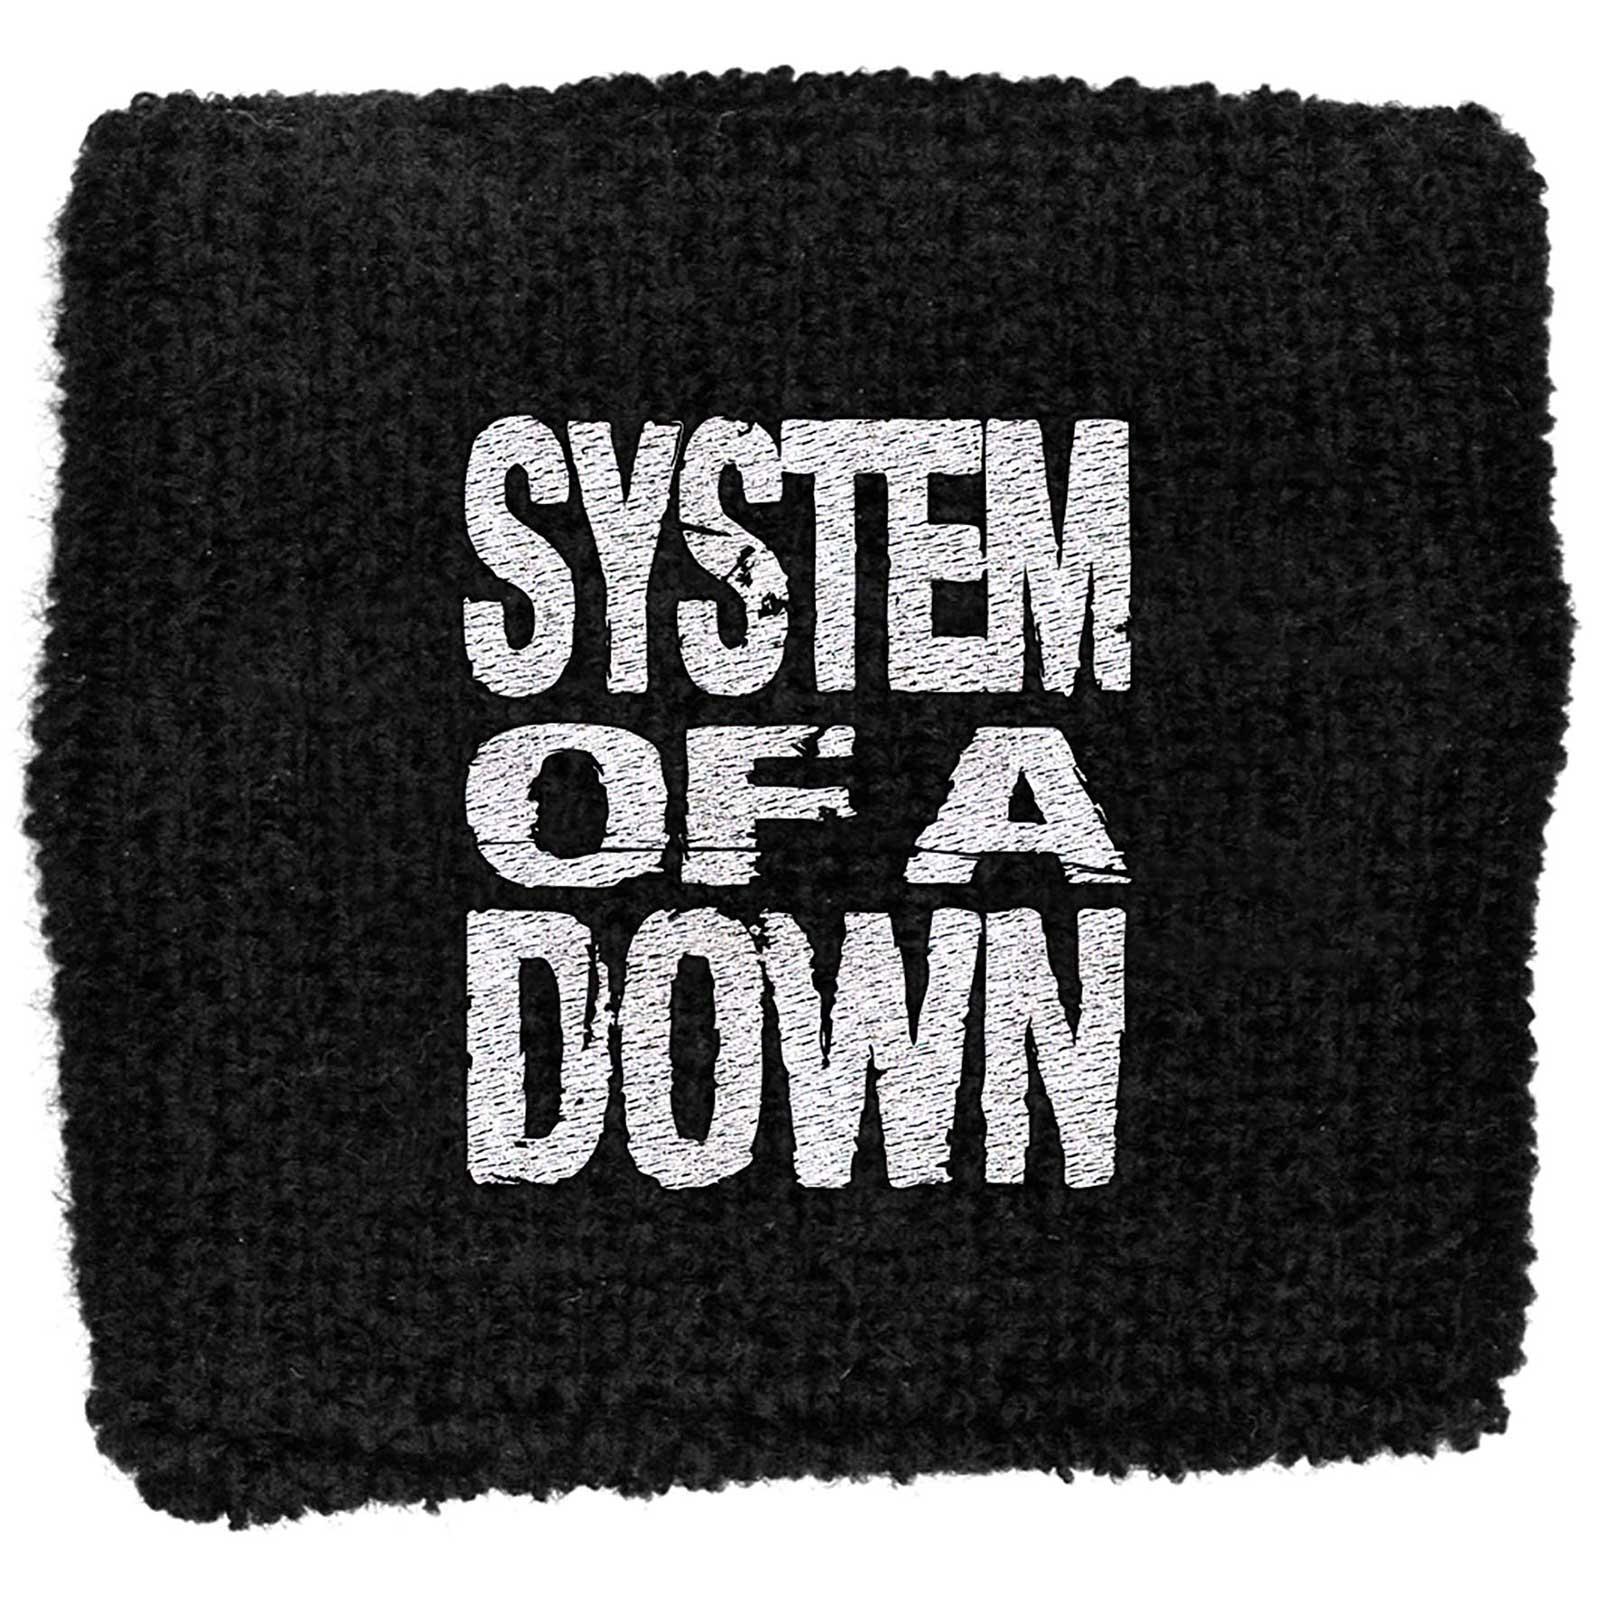 (システム・オブ・ア・ダウン) System Of A Down オフィシャル商品 ロゴ リストバンド スエットバンド ..